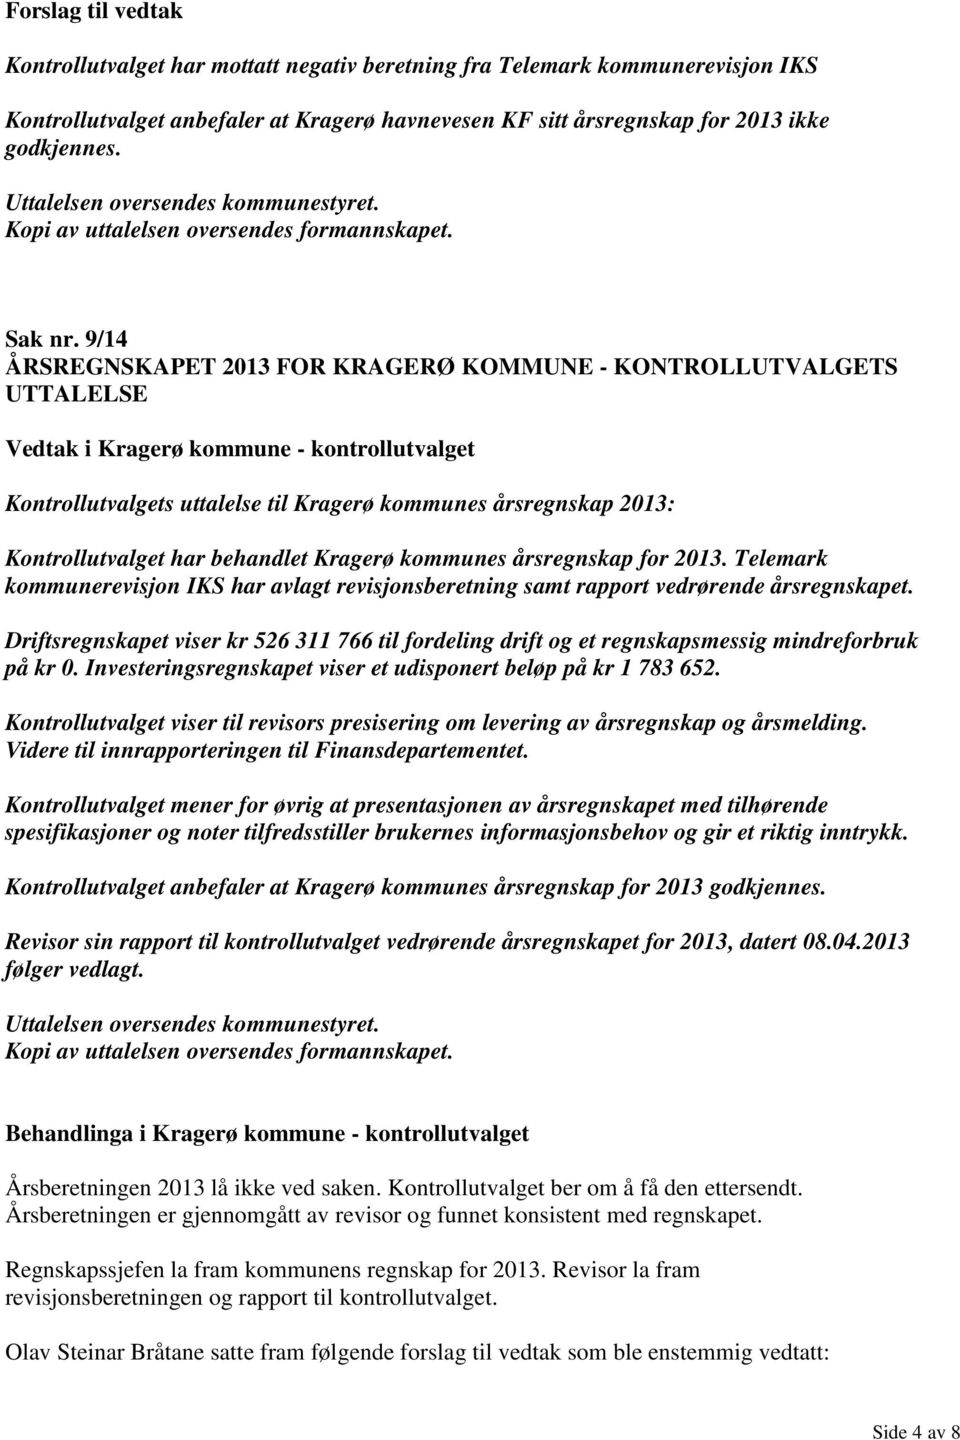 årsregnskap for 2013. Telemark kommunerevisjon IKS har avlagt revisjonsberetning samt rapport vedrørende årsregnskapet.